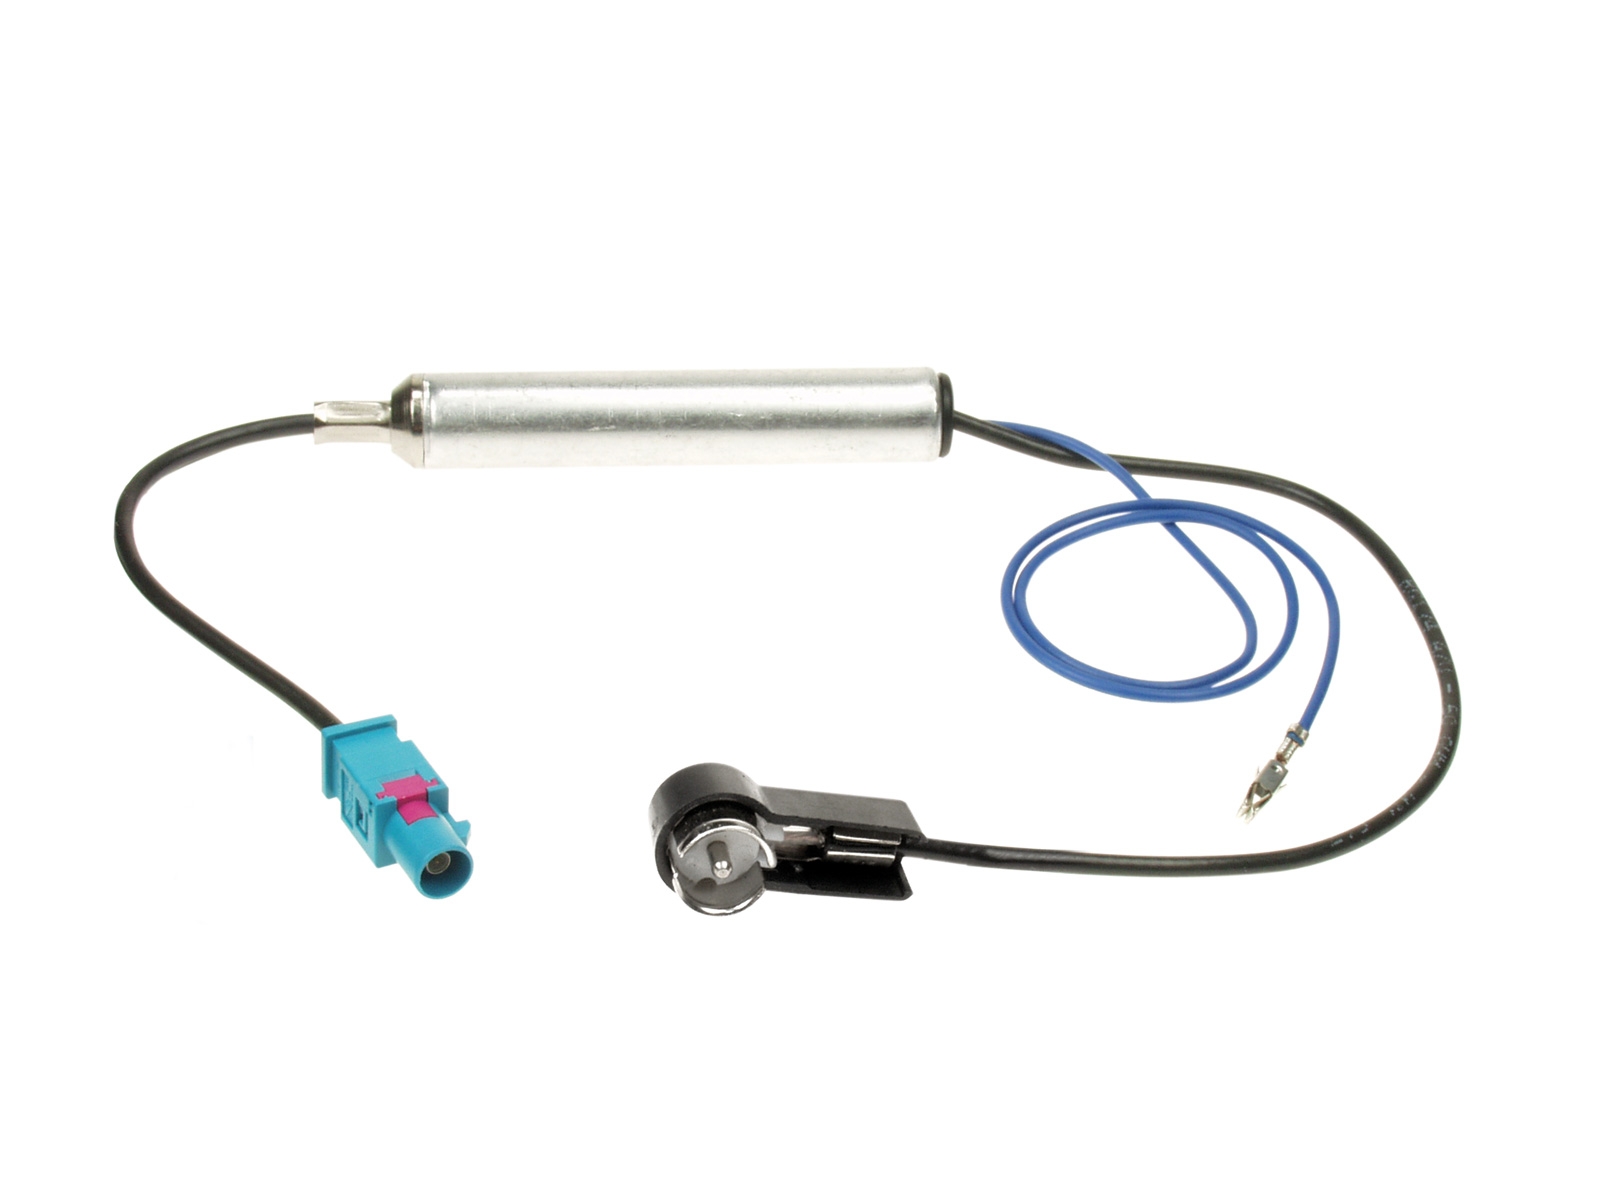 ACV Antennenadapter kompatibel mit Ford Phantomspeisung adaptiert von Fakra (m) auf ISO (m)